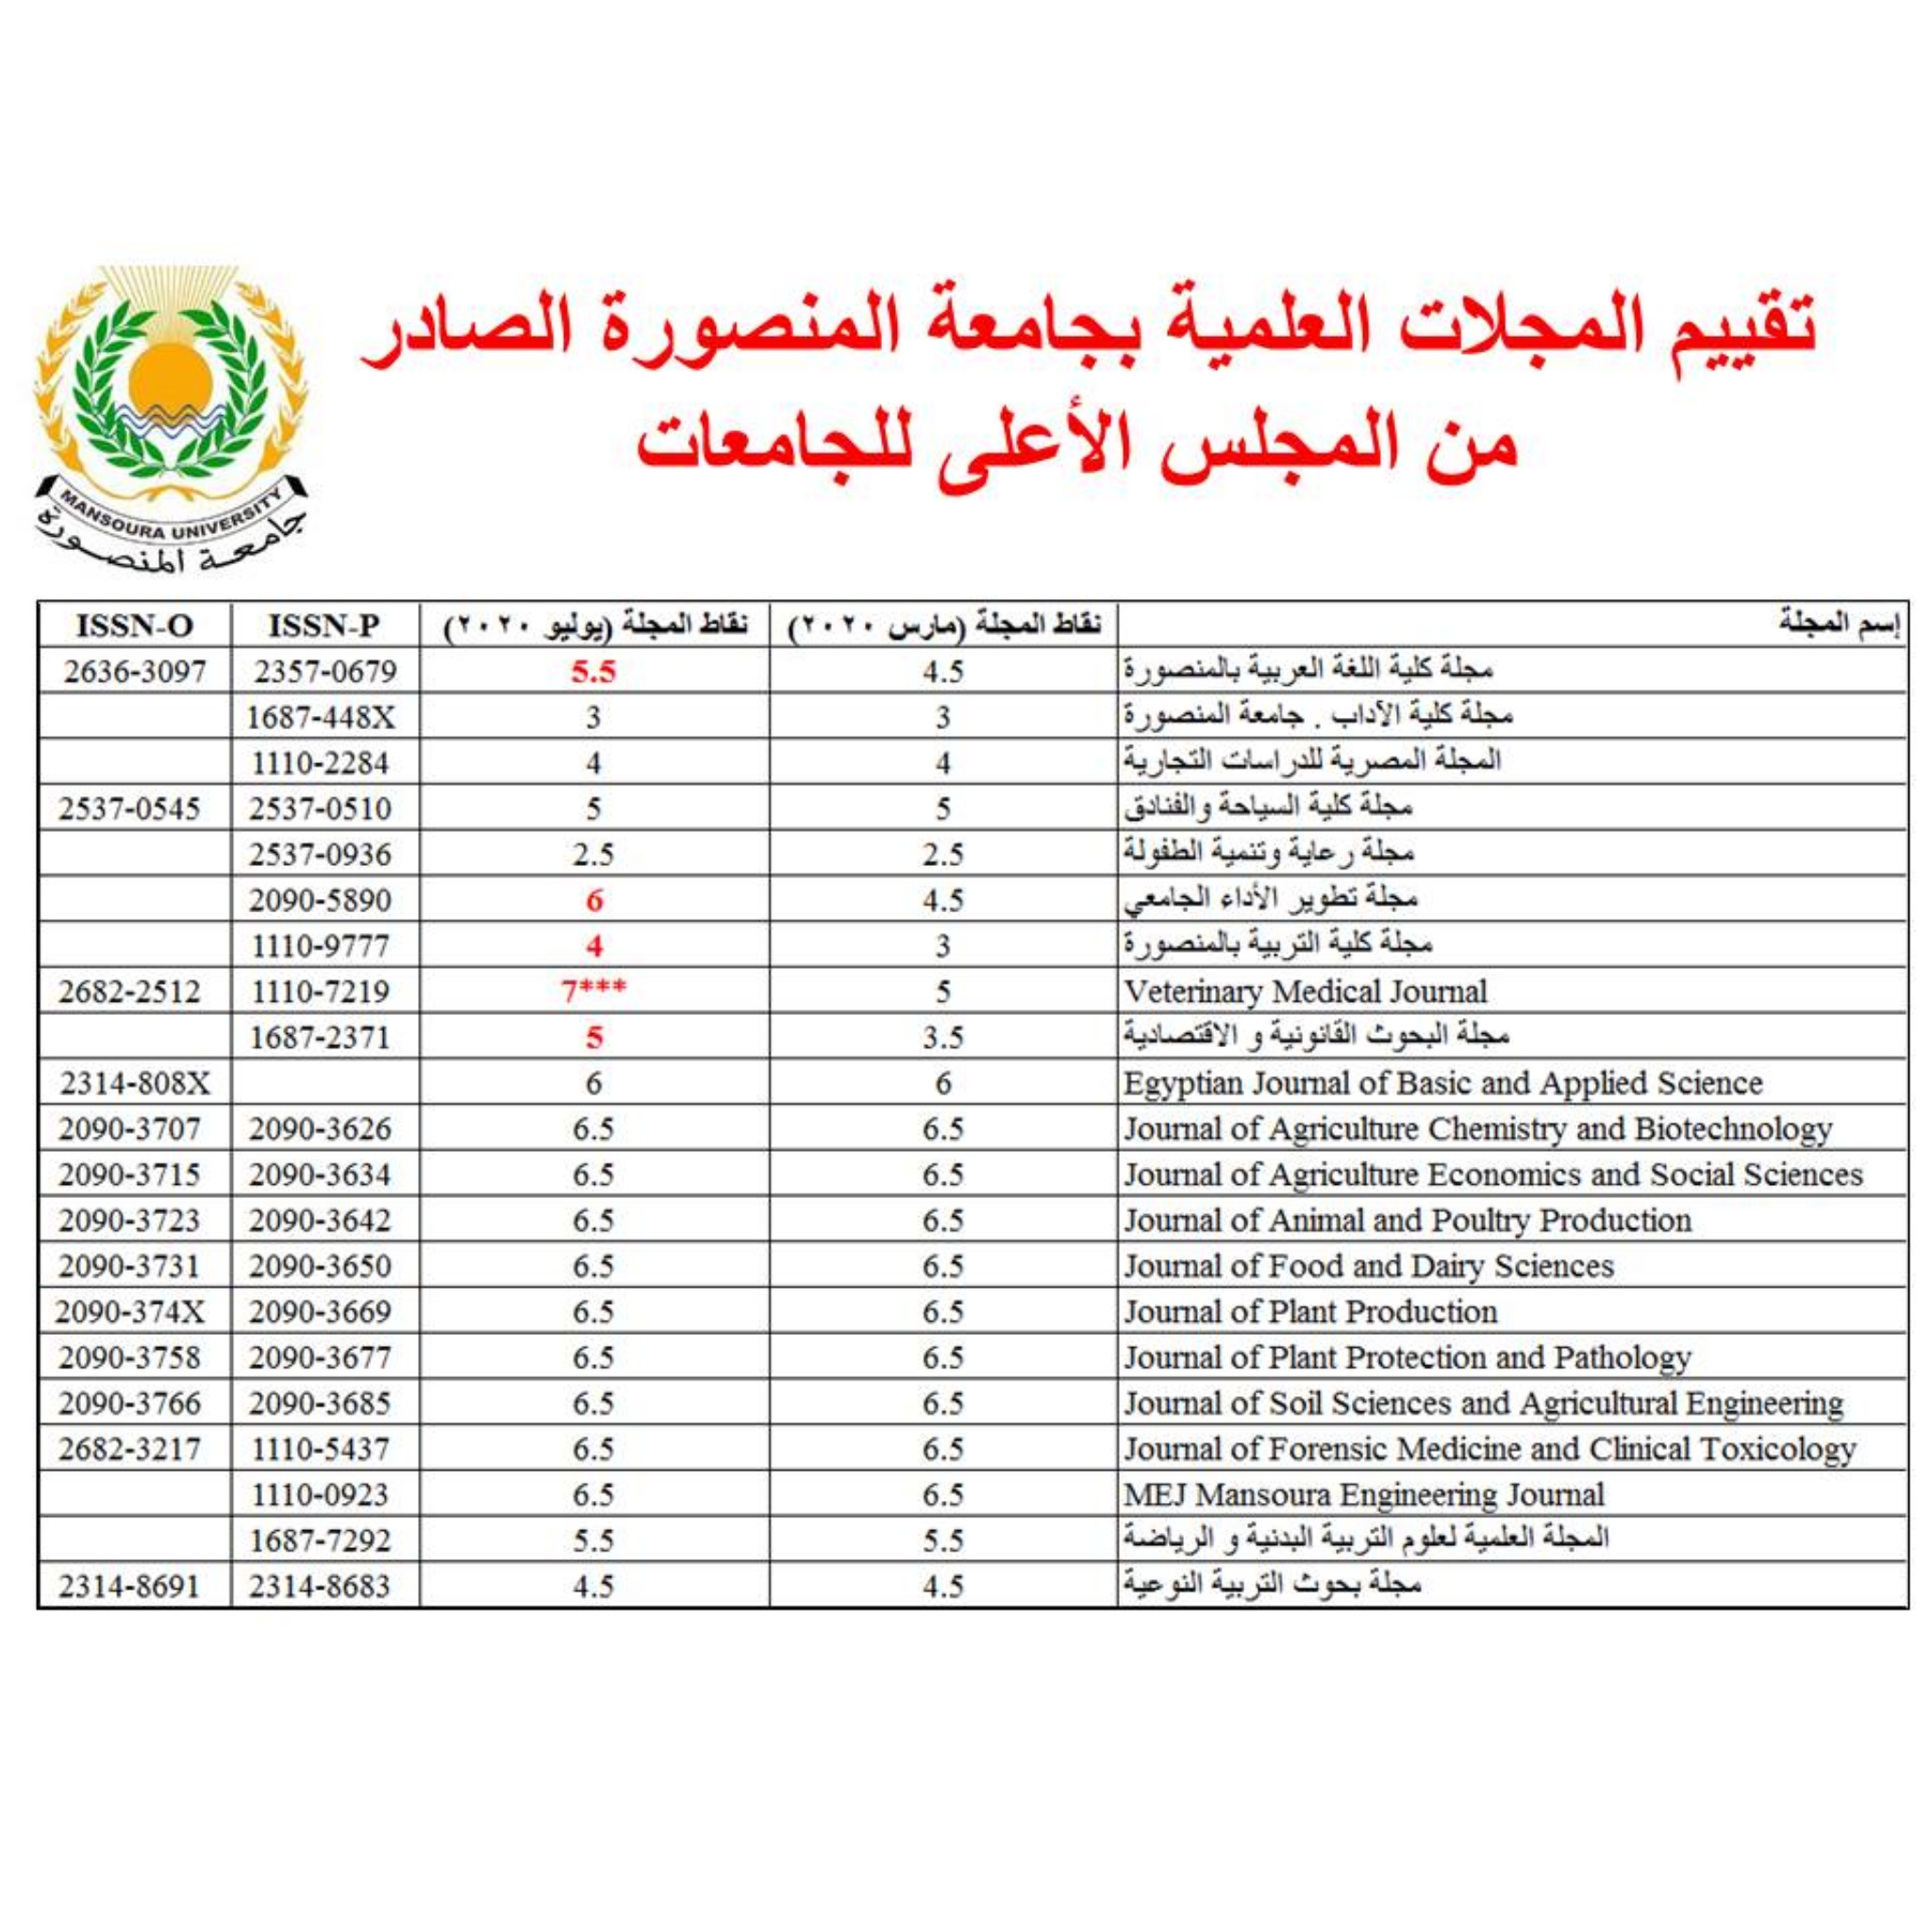 تقييم المجلات العلمية بجامعة المنصورة الصادر من المجلس الأعلى للجامعات